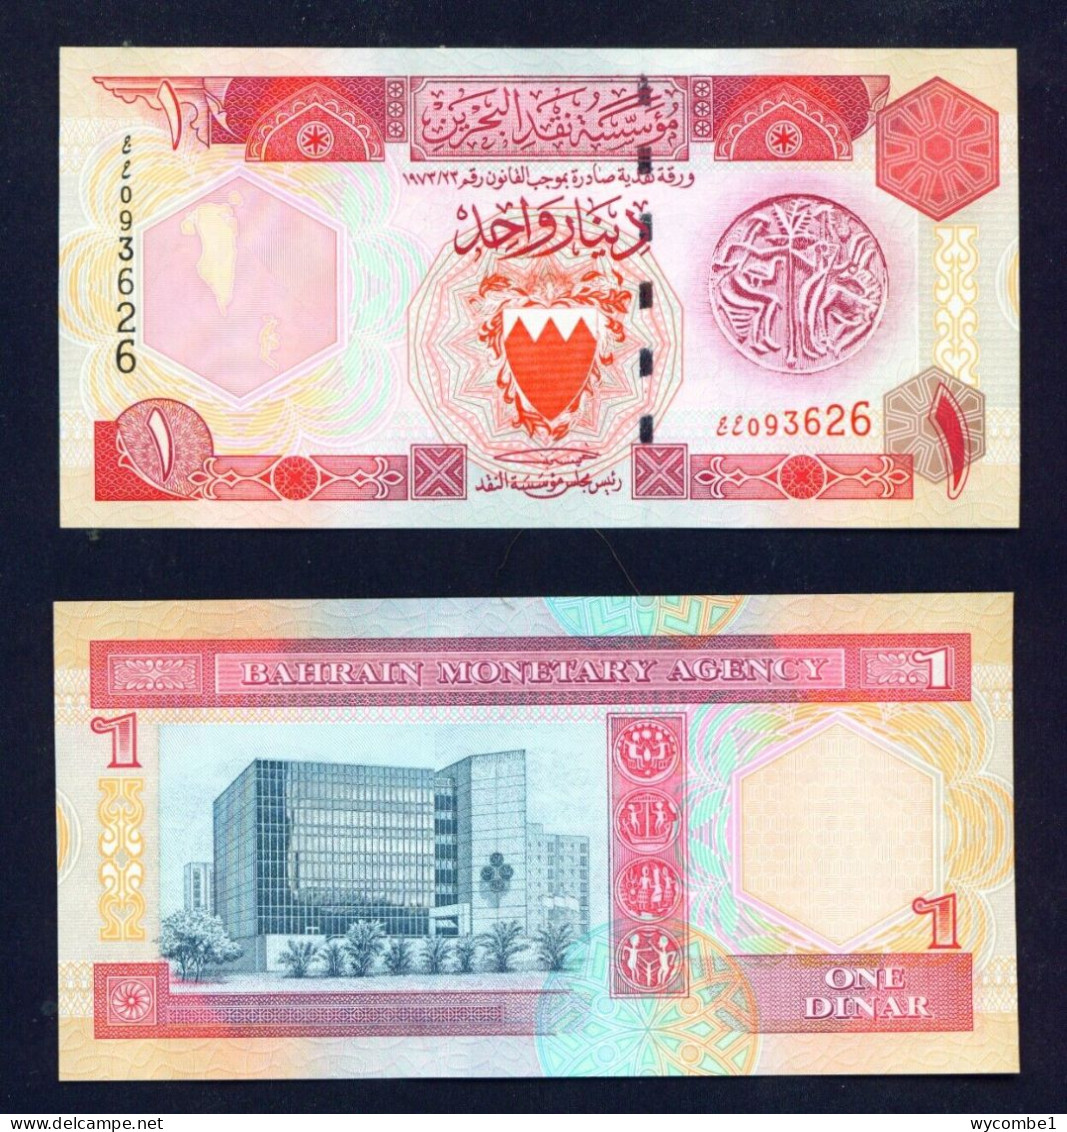 BAHRAIN -  1973 1 Dinar UNC Banknote - Bahrain